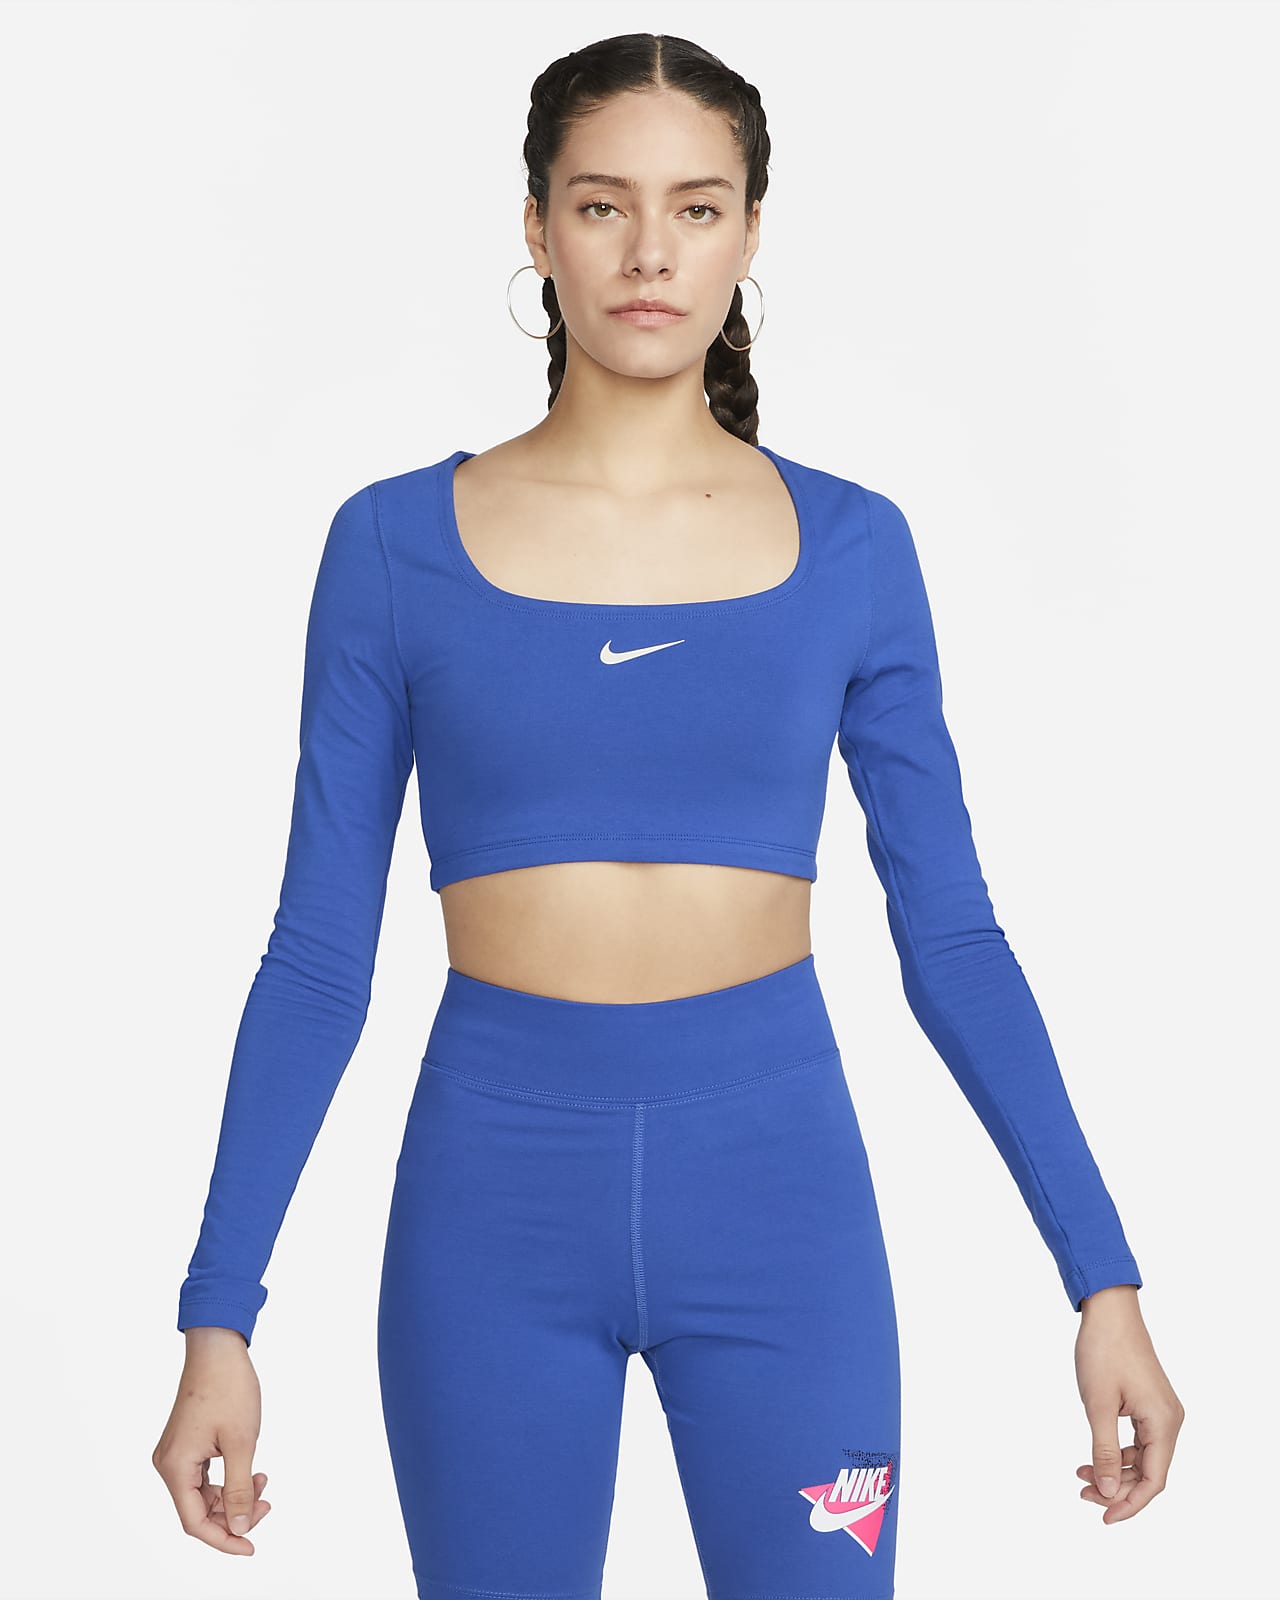 Nike Sportswear Women's Long-Sleeve Crop Top.